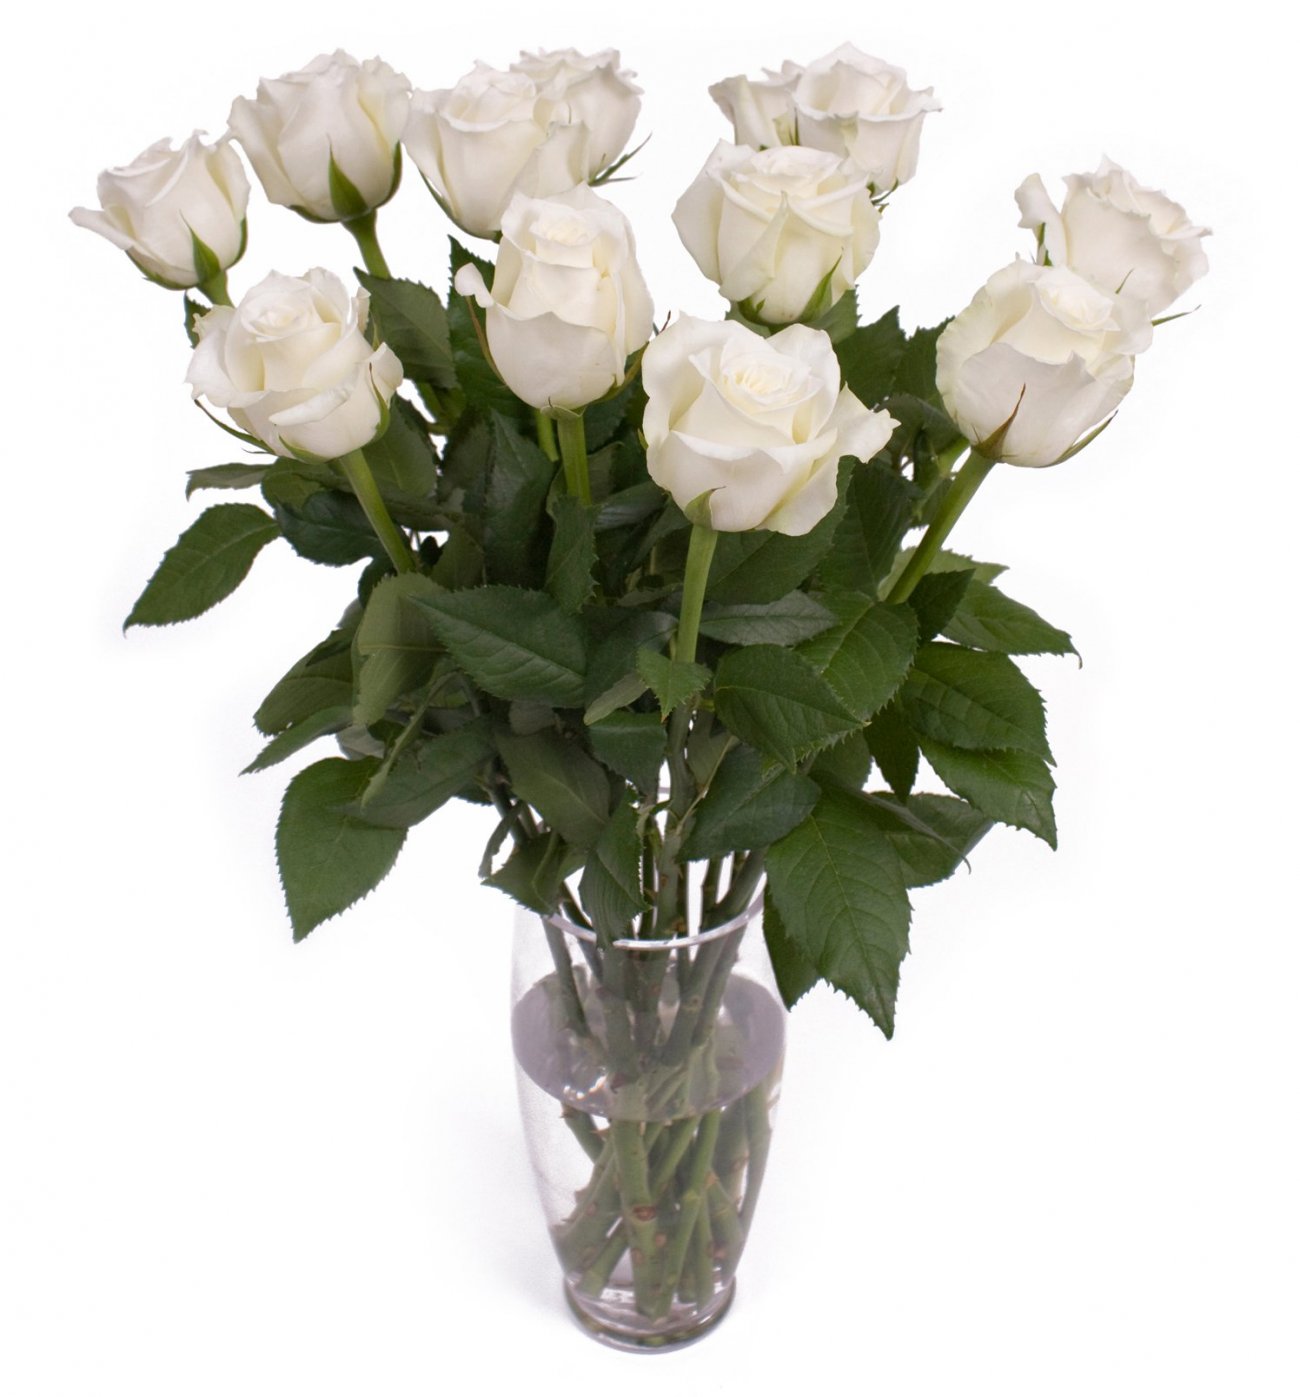 Buchet 11 trandafiri albi frumosi